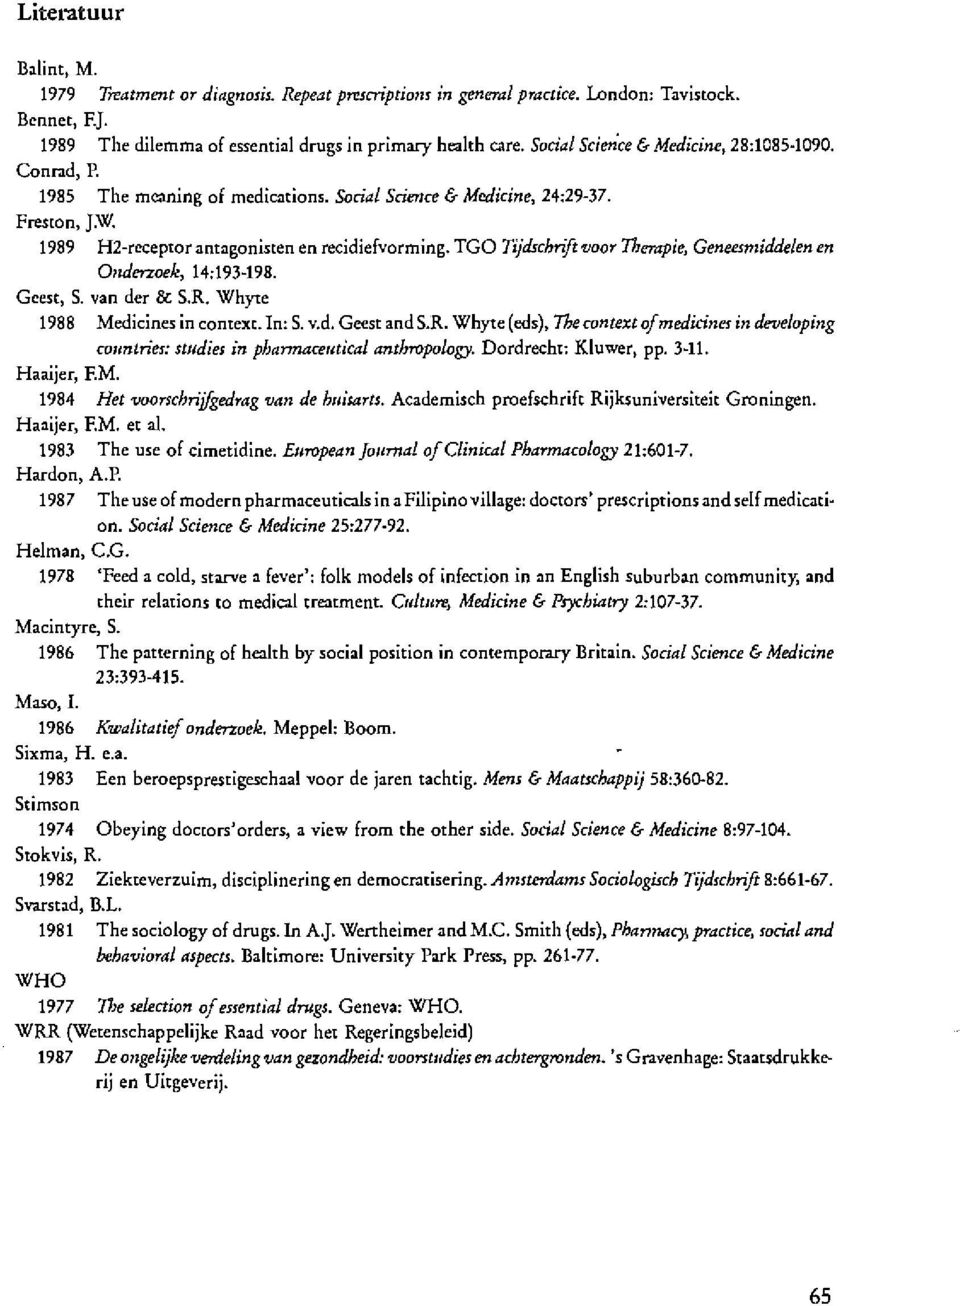 TGO Tijdschnft voor Therapie, Geneesmiddelen en 011derzoek, 14:193-198. Geest, S. van der & S.R. Whyte 1988 Medicines in context. In: S. v.d. Geest and S.R. Whyte (eds), Thecontext of medicines indeveloping co1mtn'es: studies in phannaceutical anthropology.